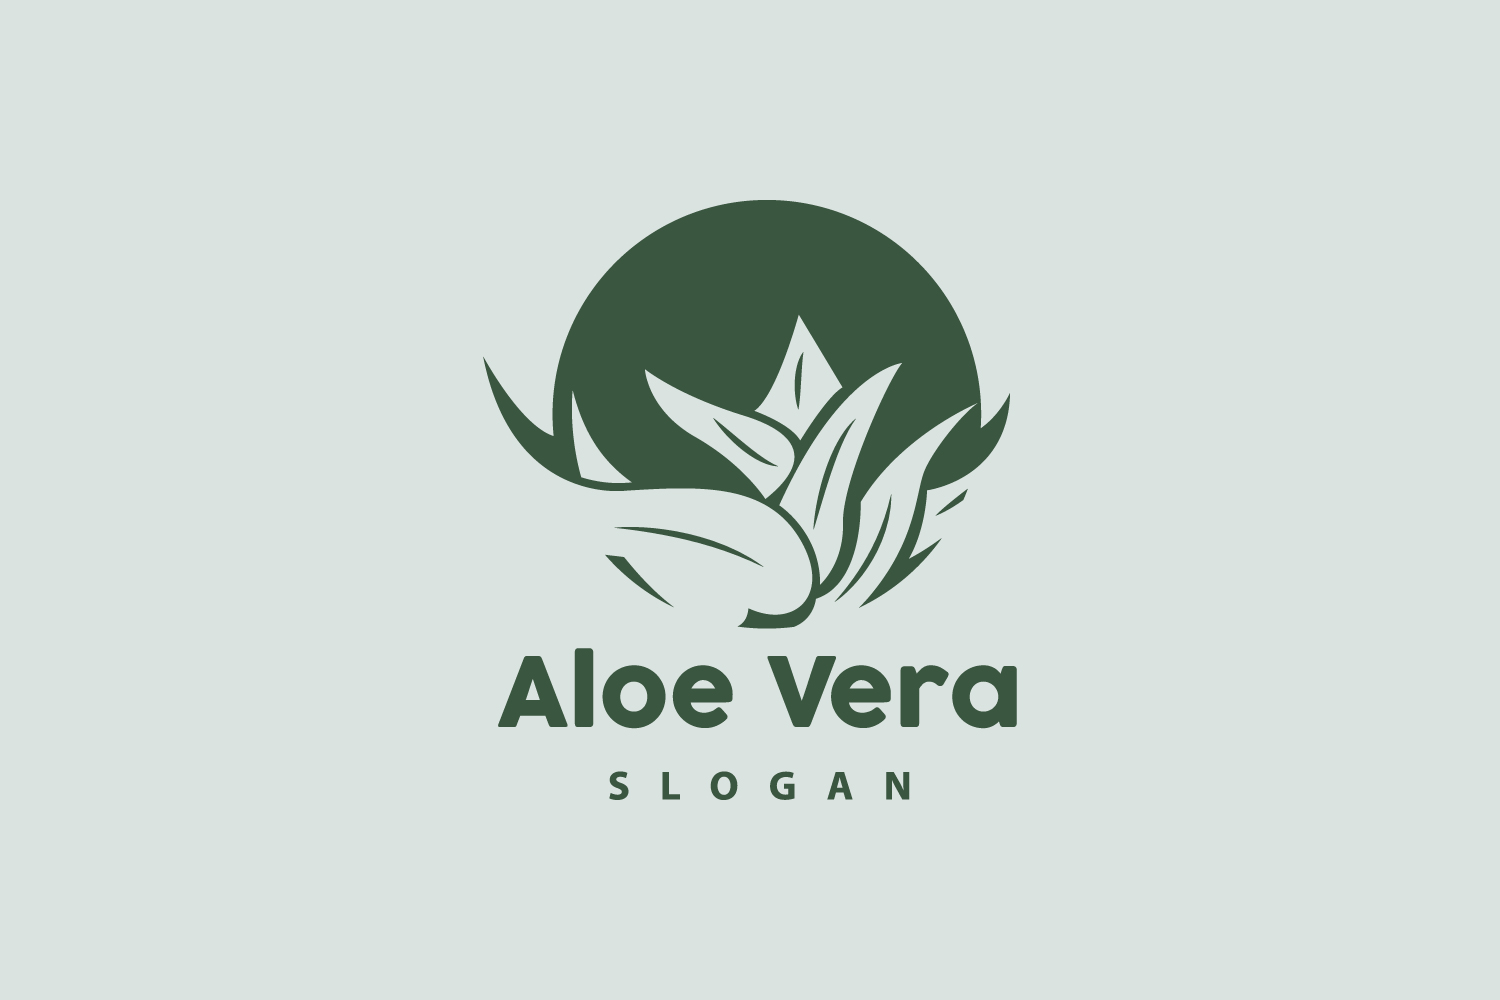 Aloe Vera Logo Herbal Plant VectorV15